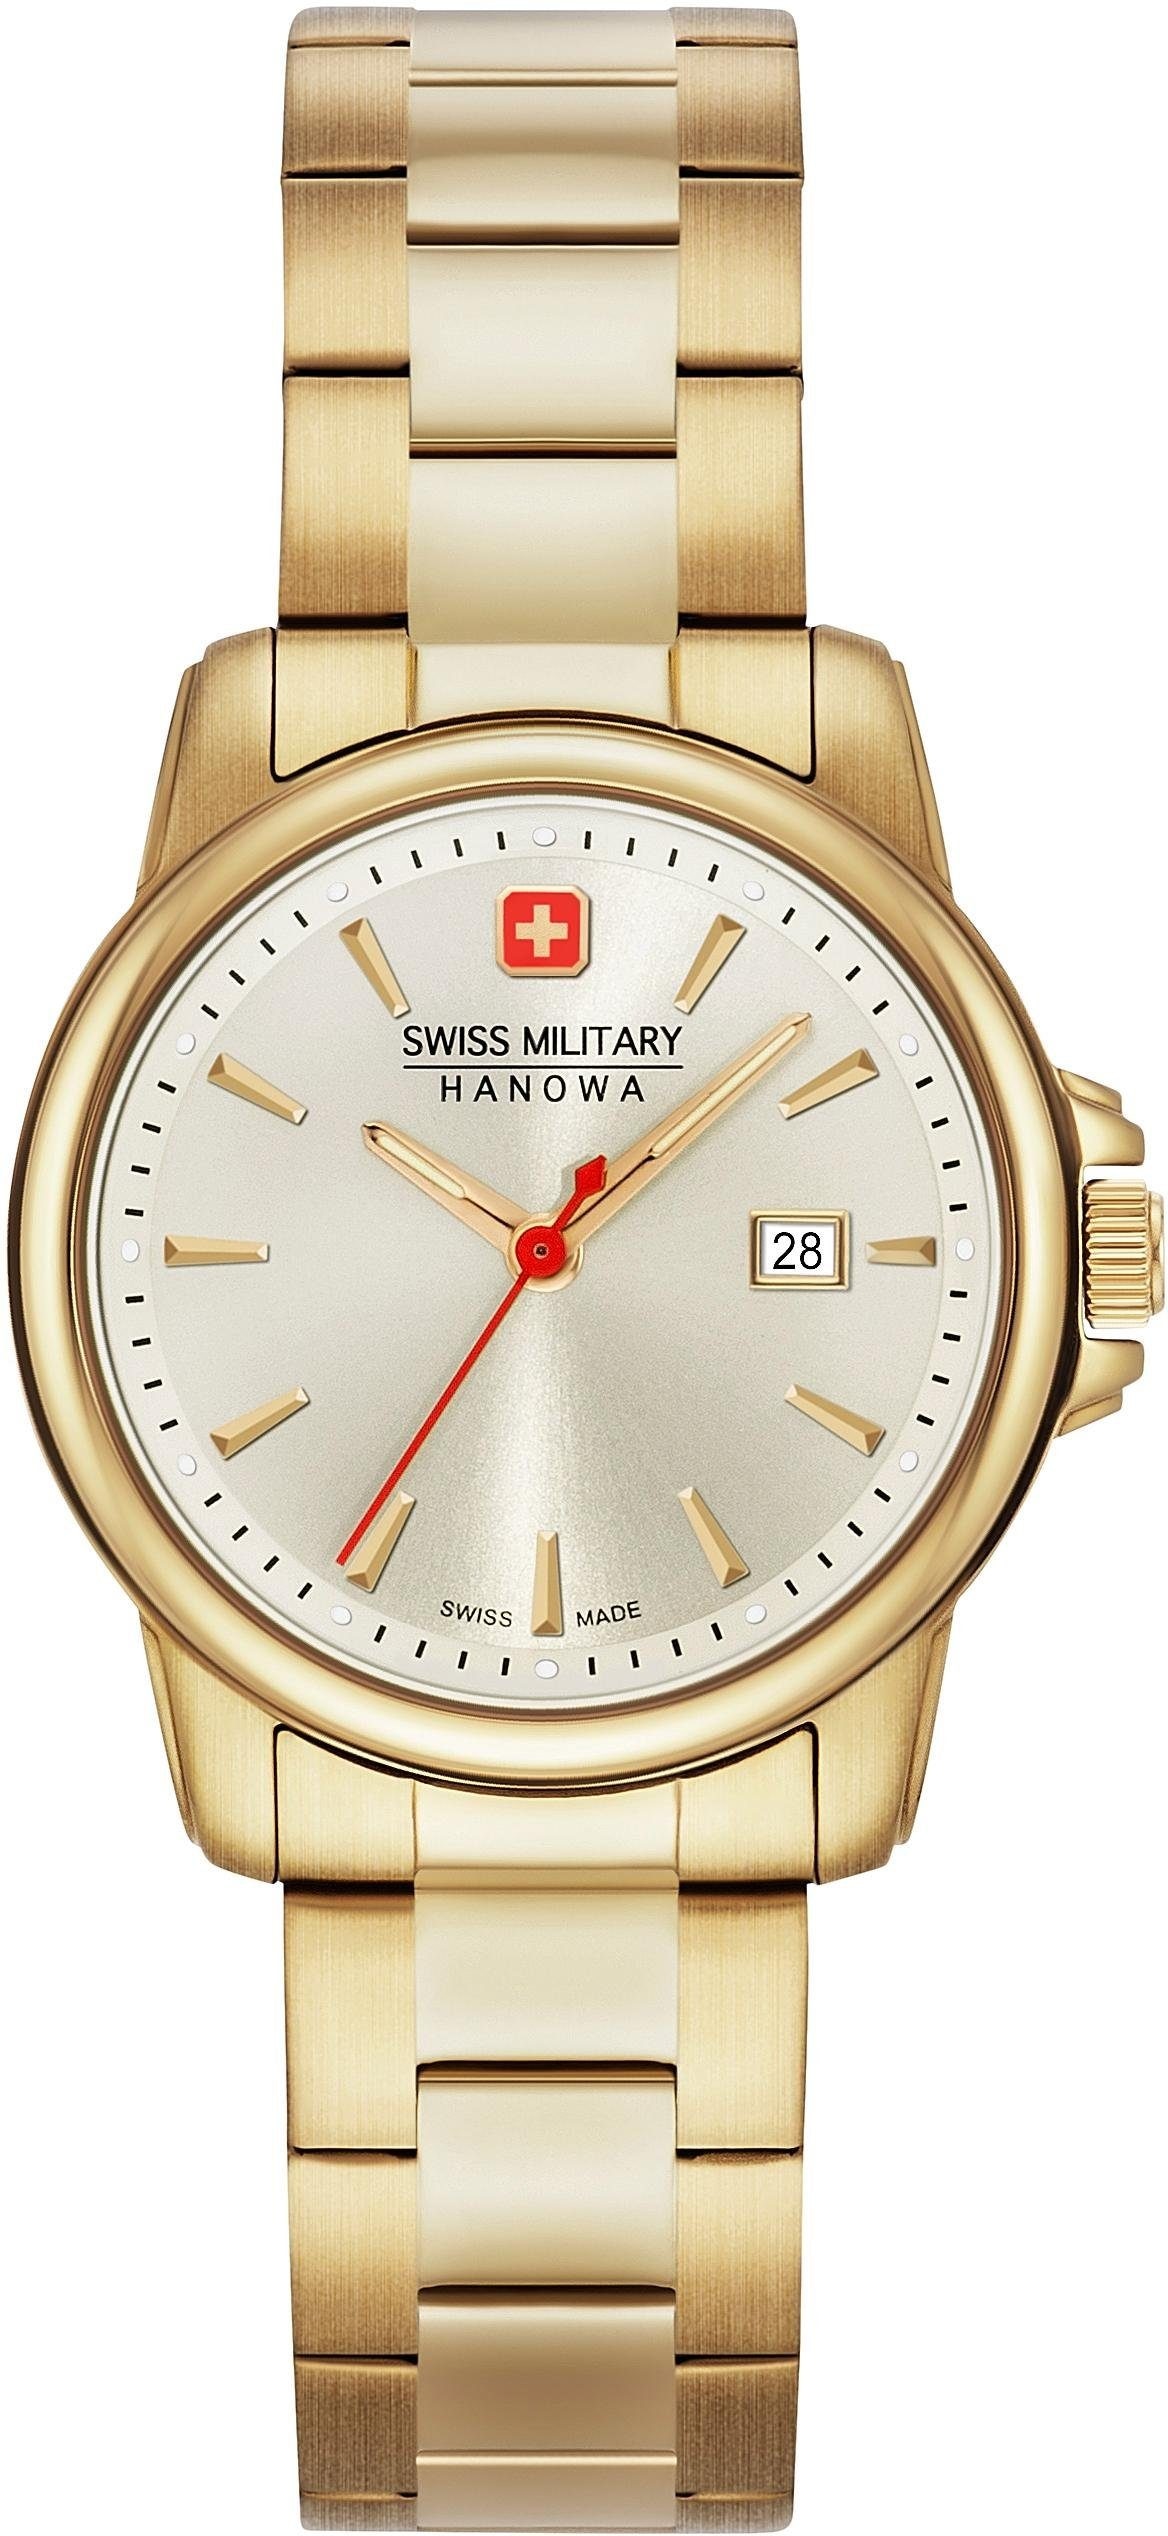 Swiss Military Hanowa Schweizer Uhr »SWISS RECRUIT LADY II,  06-7230.7.02.002« bequem bestellen